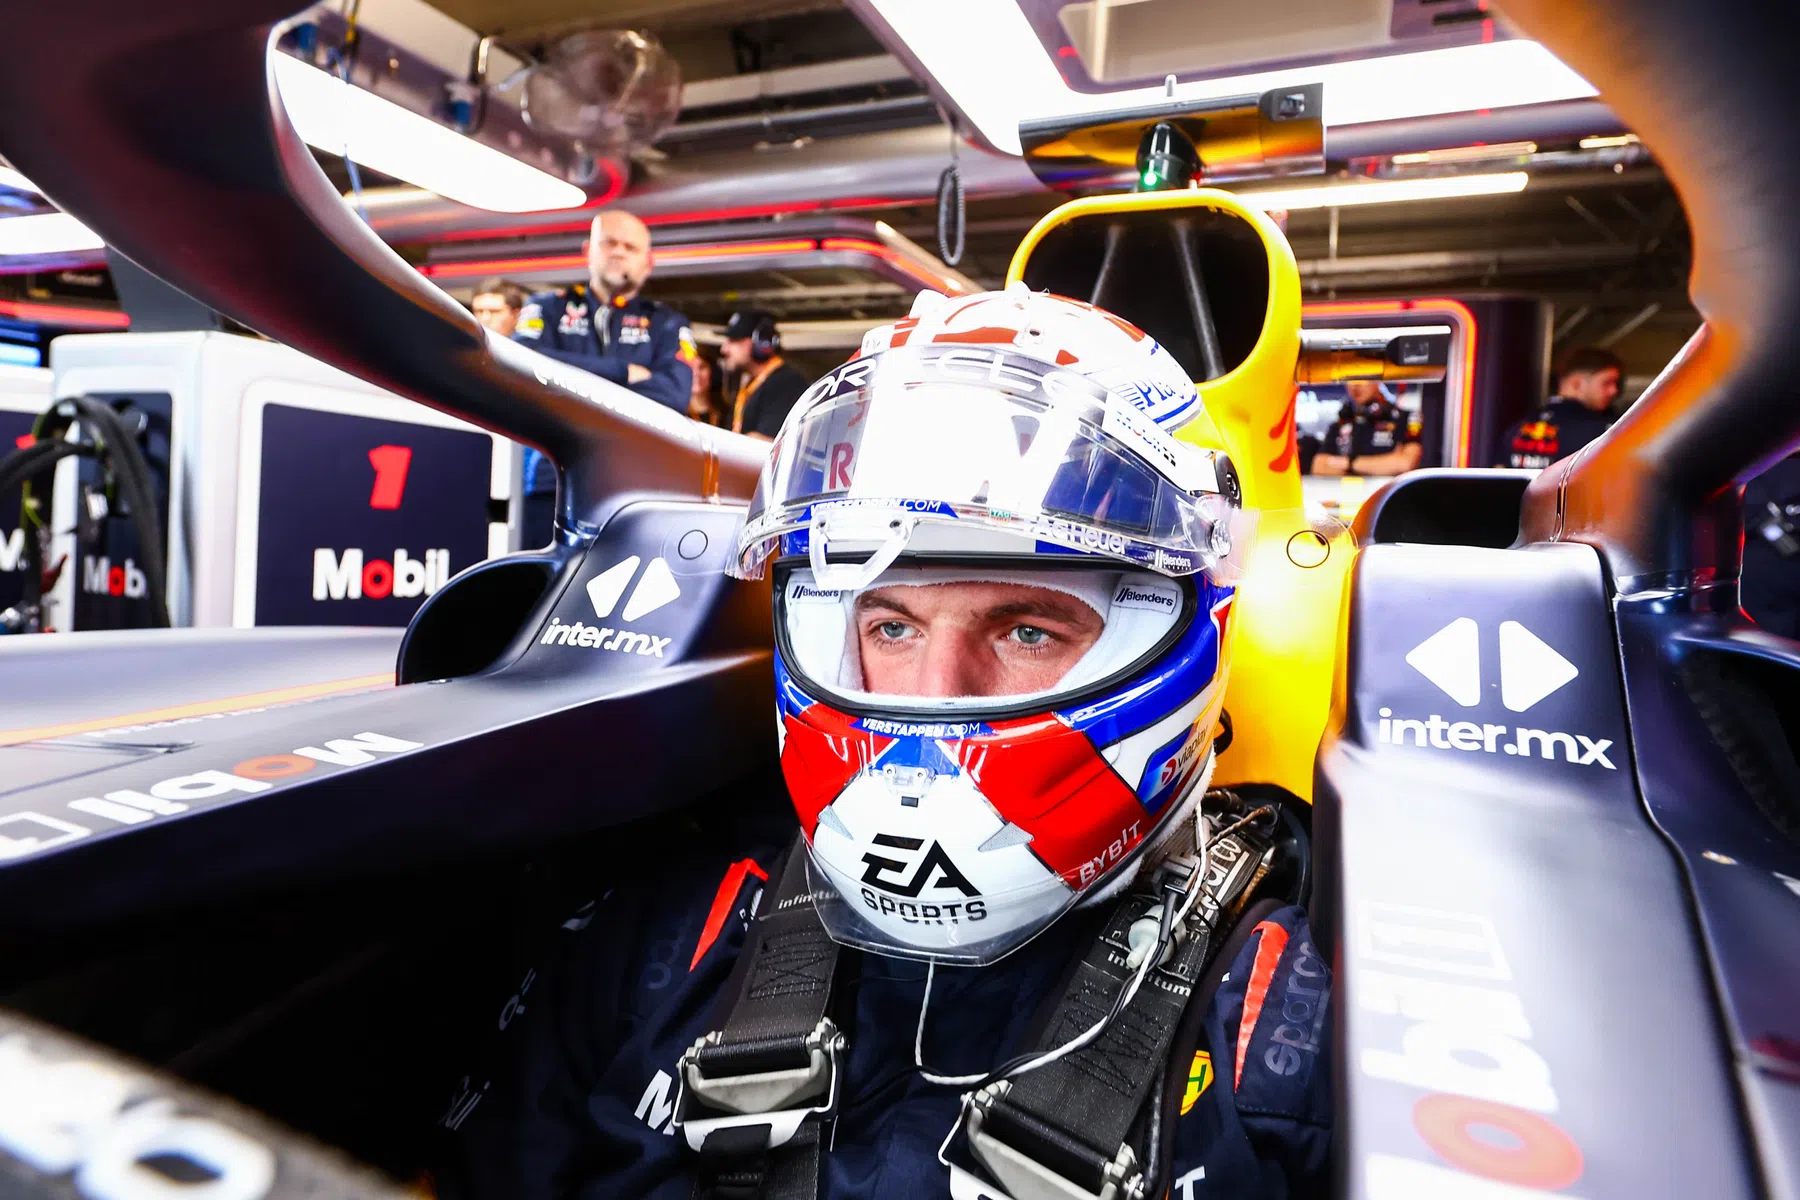 Le moteur de Verstappen tombe en panne lors de la deuxième séance d'essais libres.